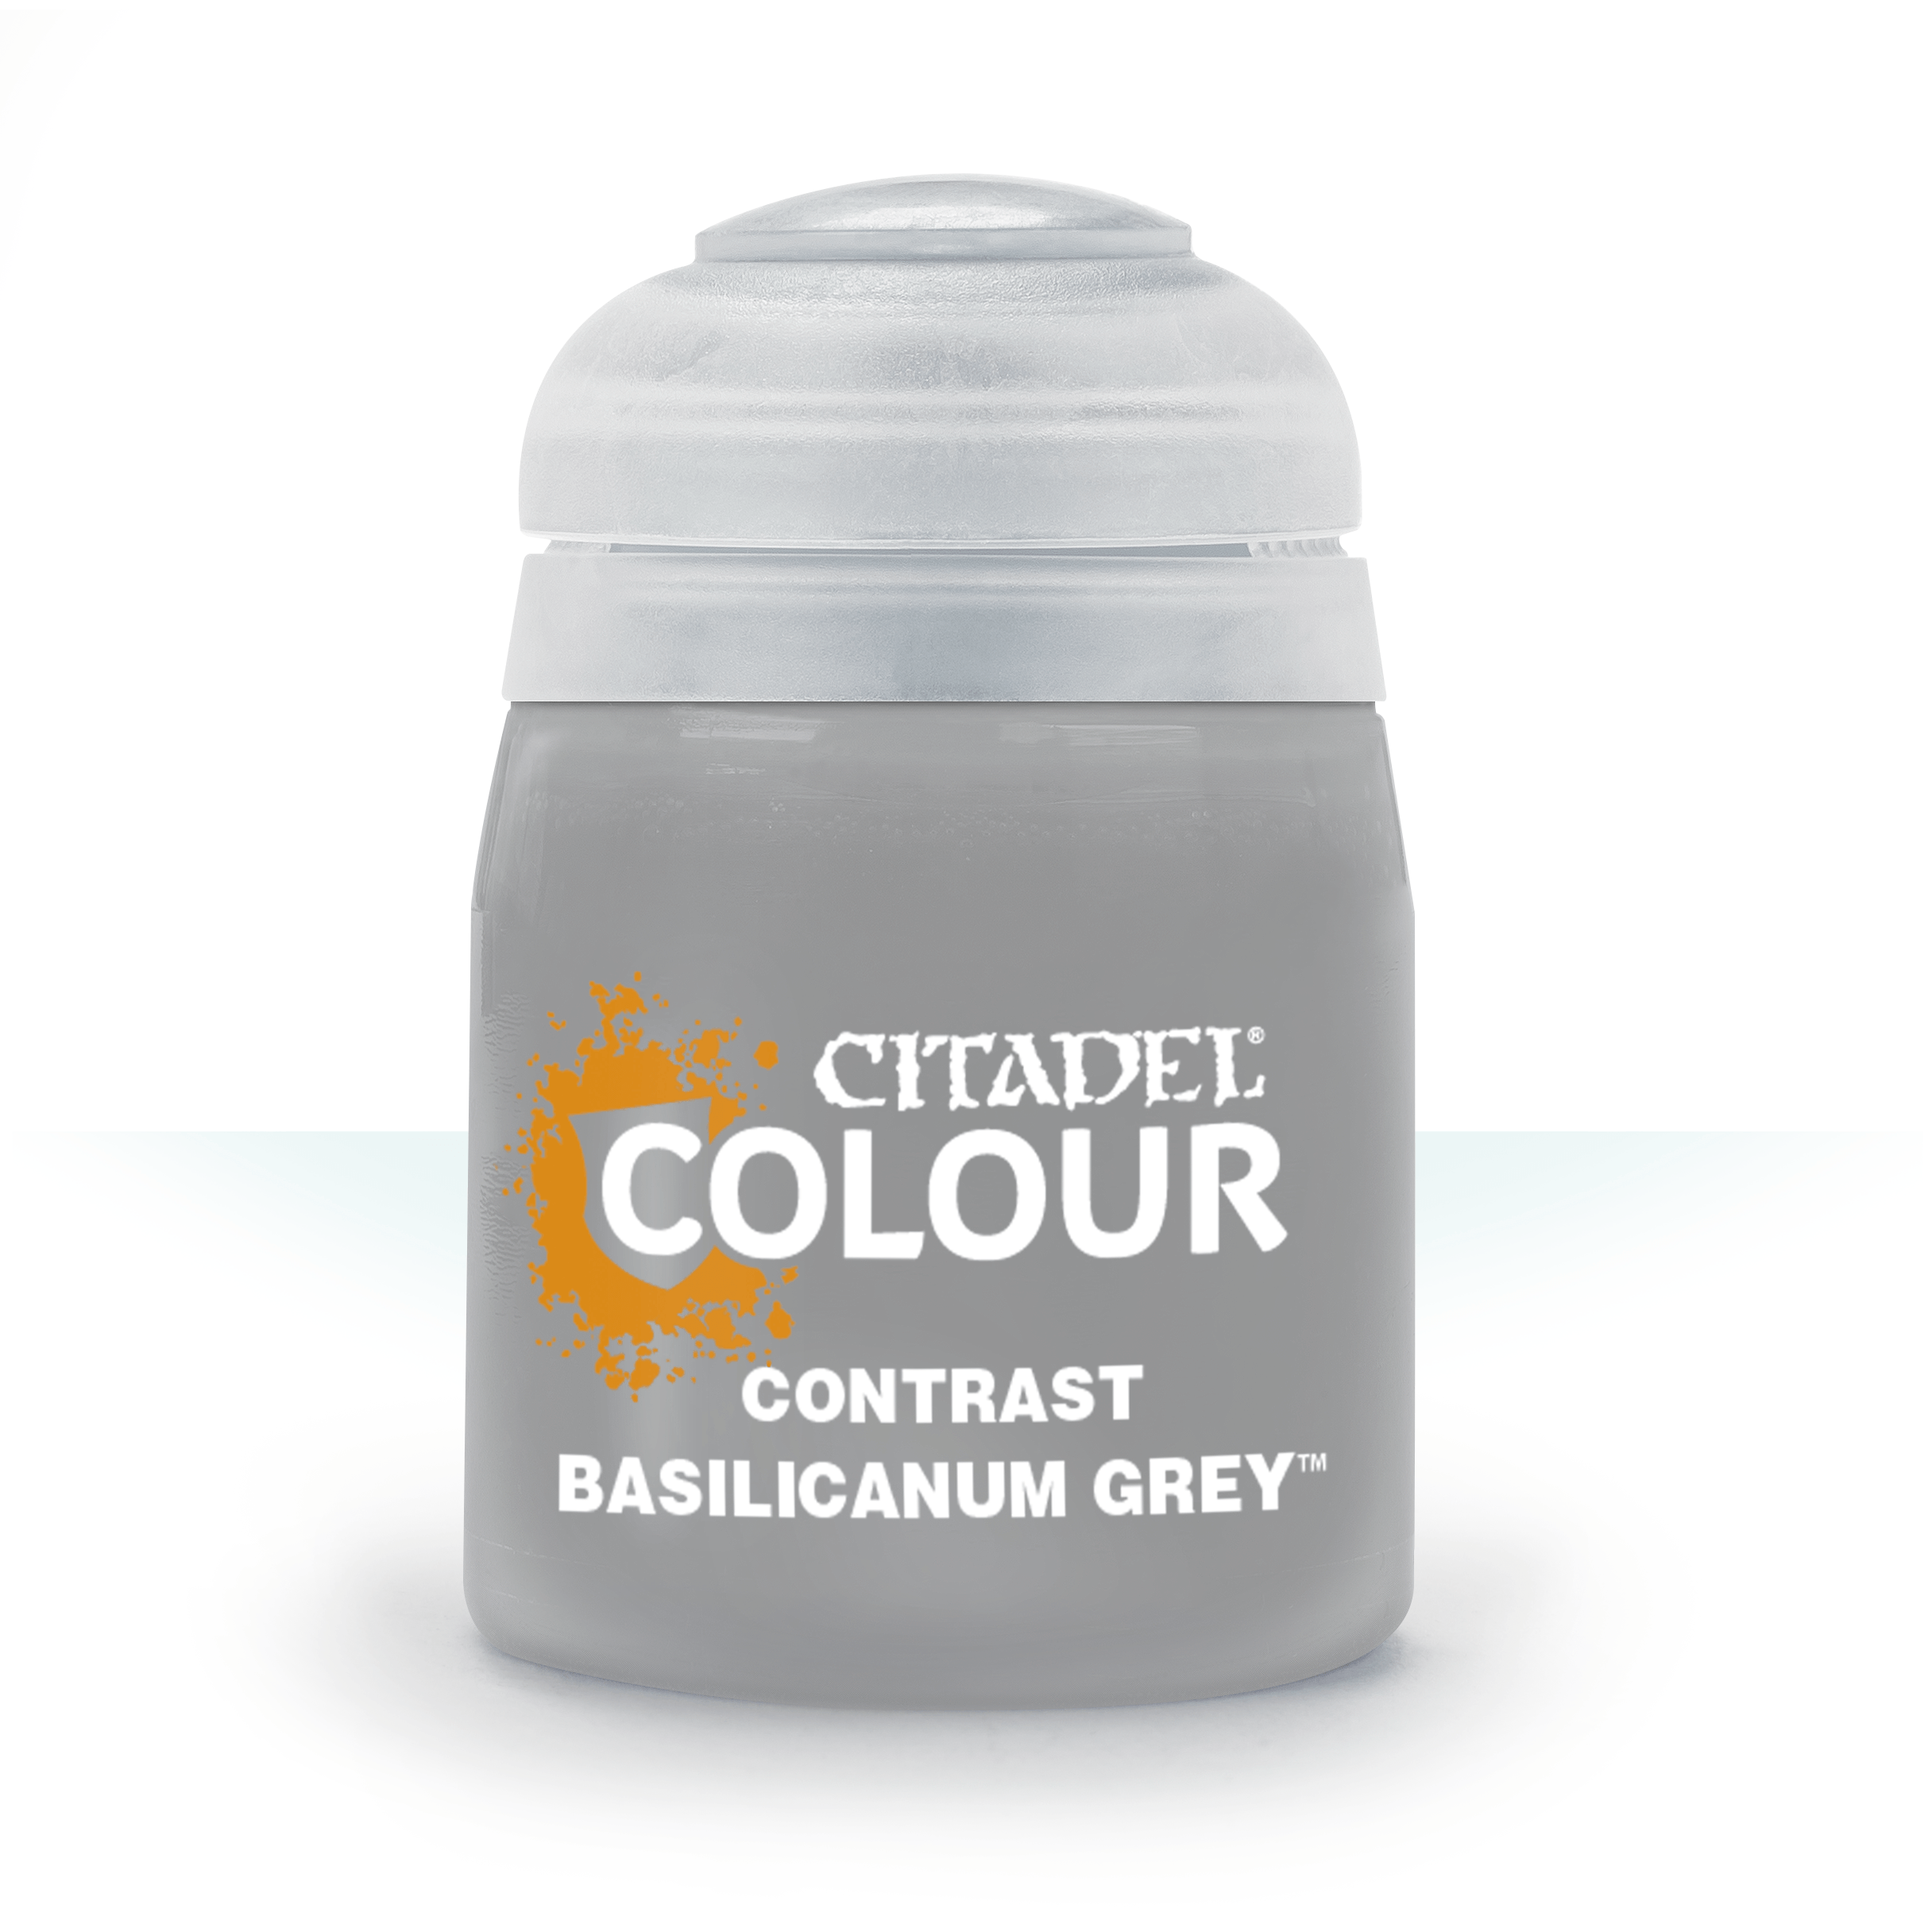 Contrast Basilicanum Grey - Citadel Colour